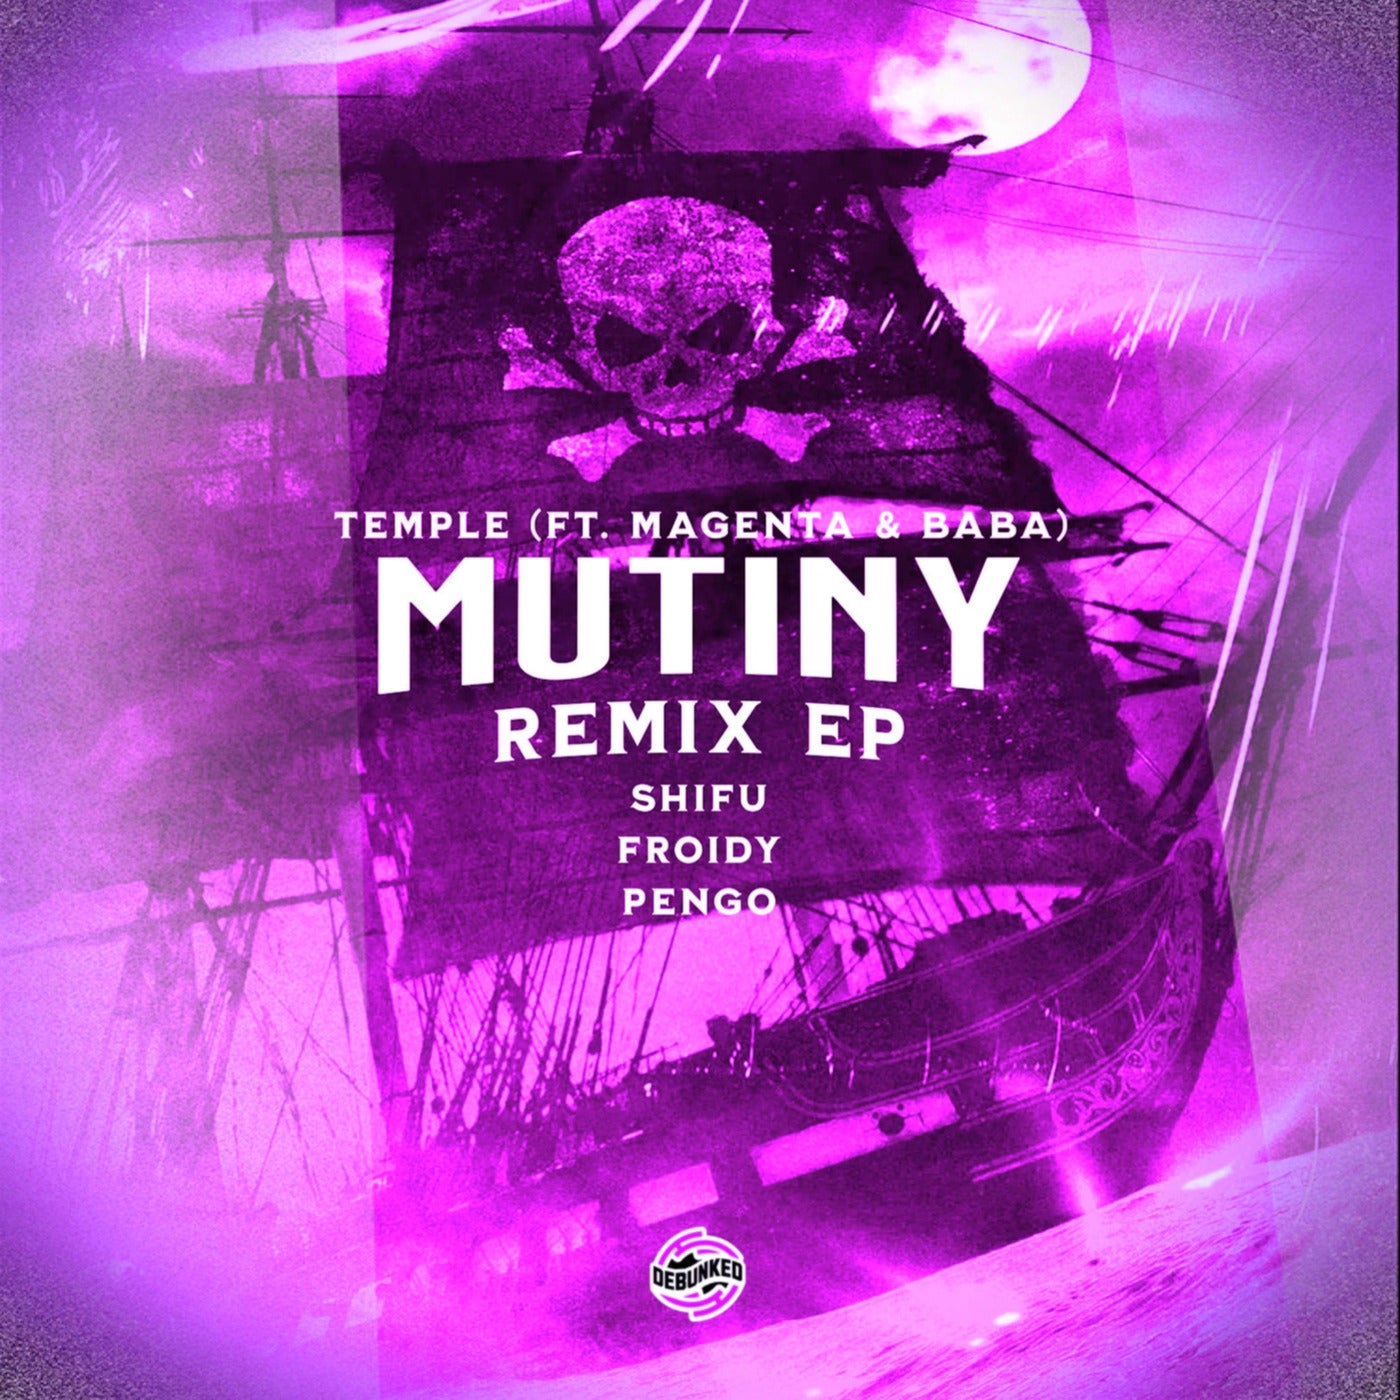 Mutiny Remix EP